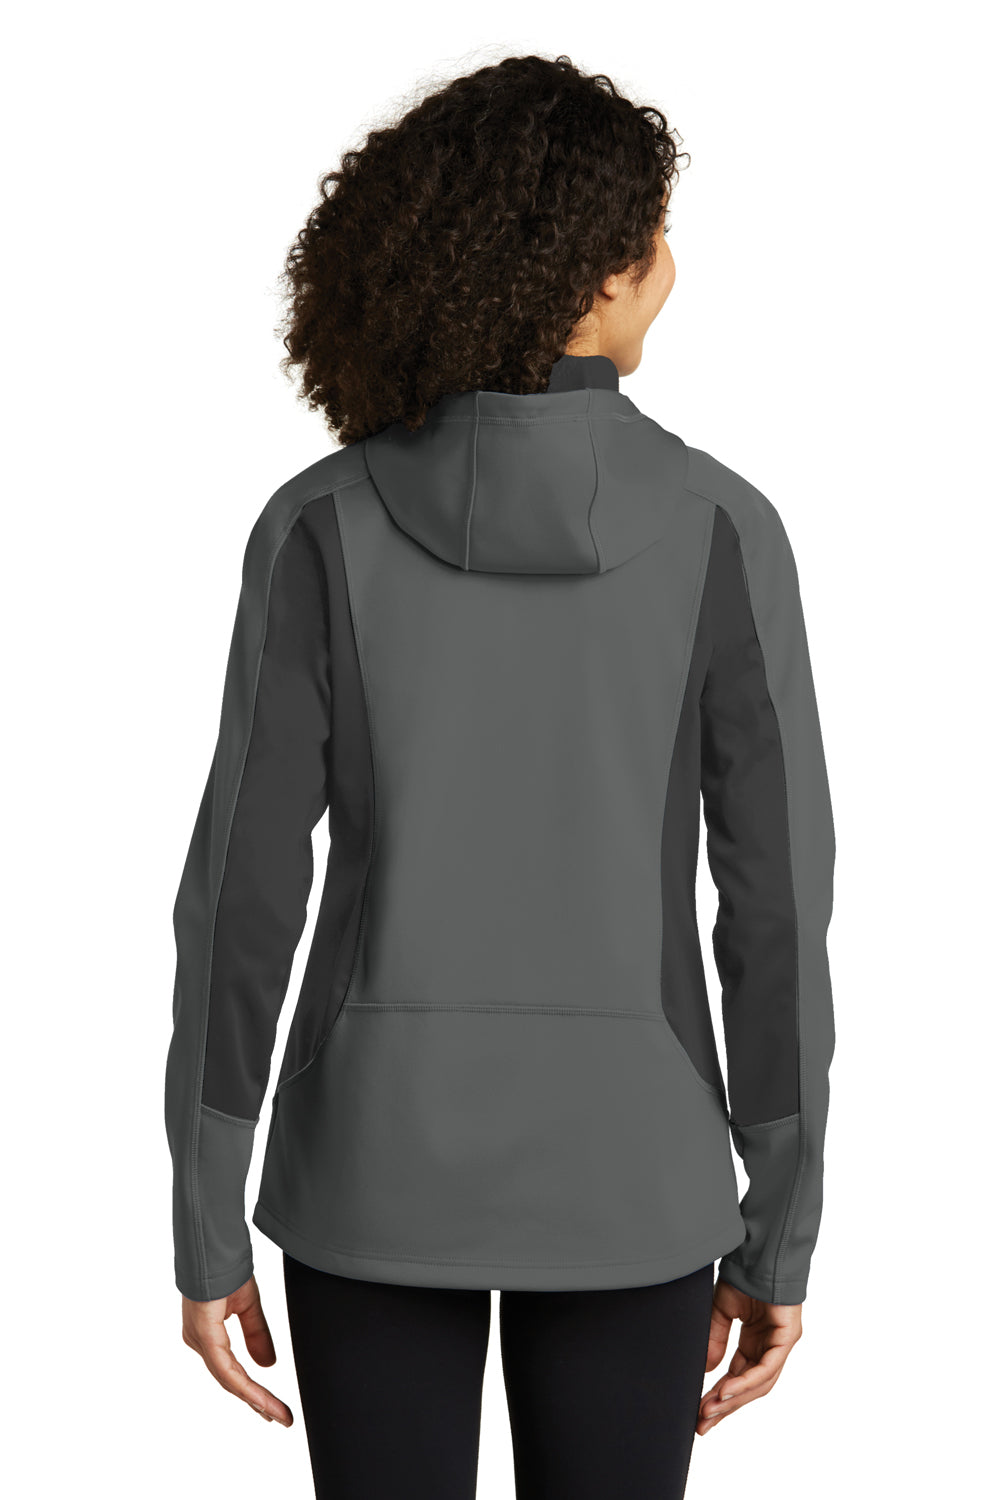 Eddie Bauer EB543 Womens Trail Water Resistant Full Zip Hooded Jacket Metal Grey Model Back